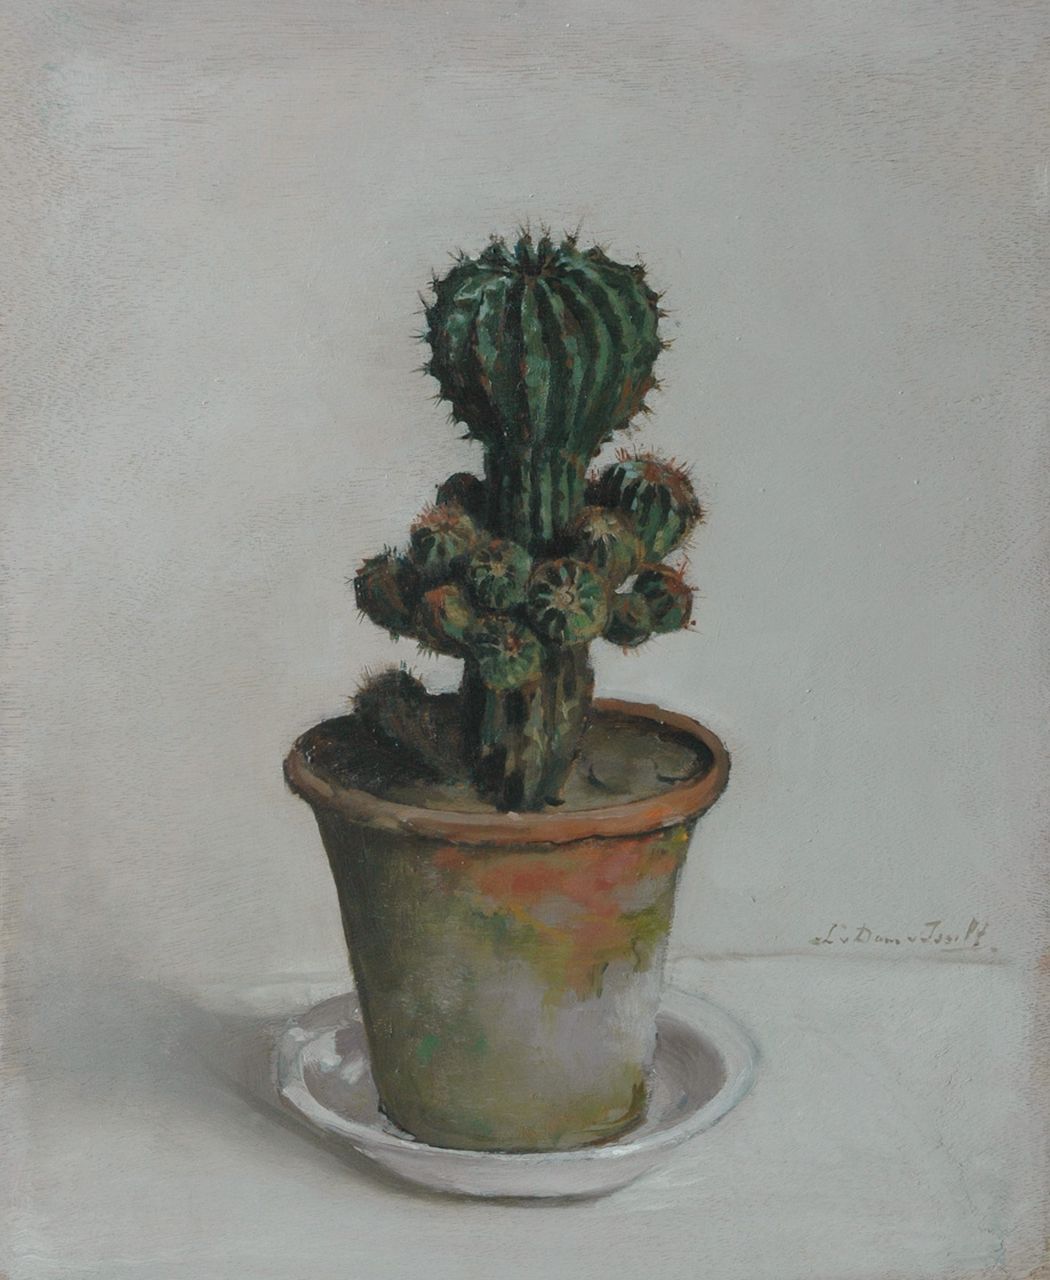 Dam van Isselt L. van | Lucie van Dam van Isselt, Cactus, Öl auf Holz 45,7 x 37,0 cm, signed r.c. und executed ca. 1920